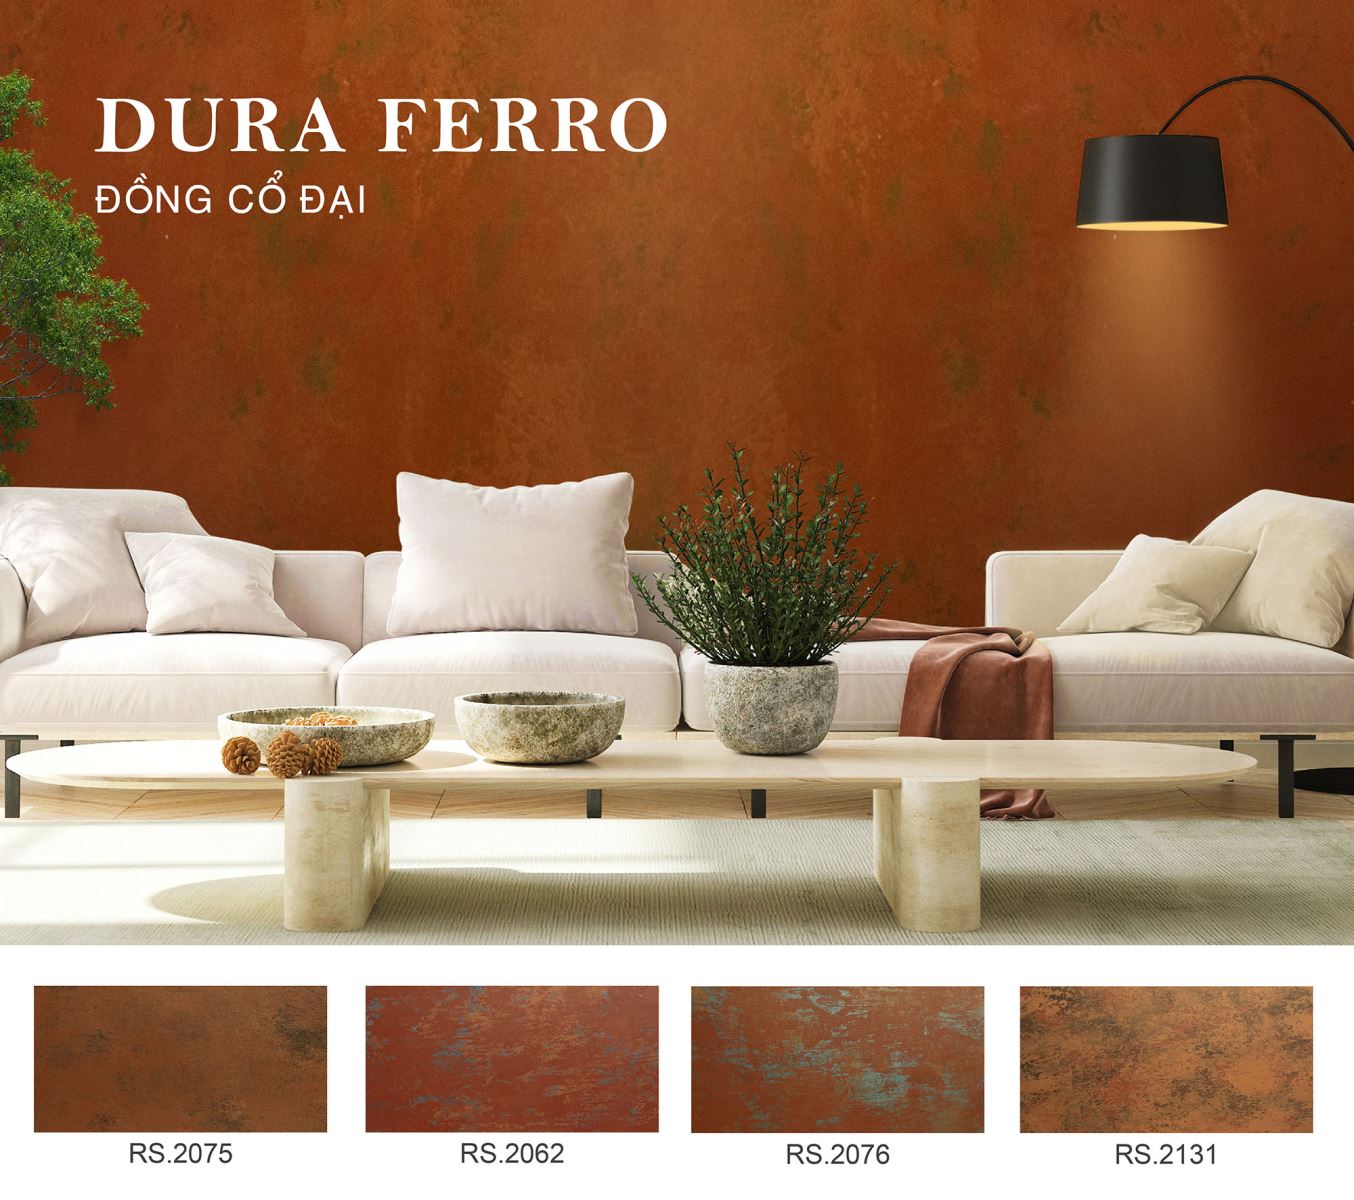 Màu Dura Ferro - Đồng Cổ Đại cho phong cách nghệ thuật ấn tượng 